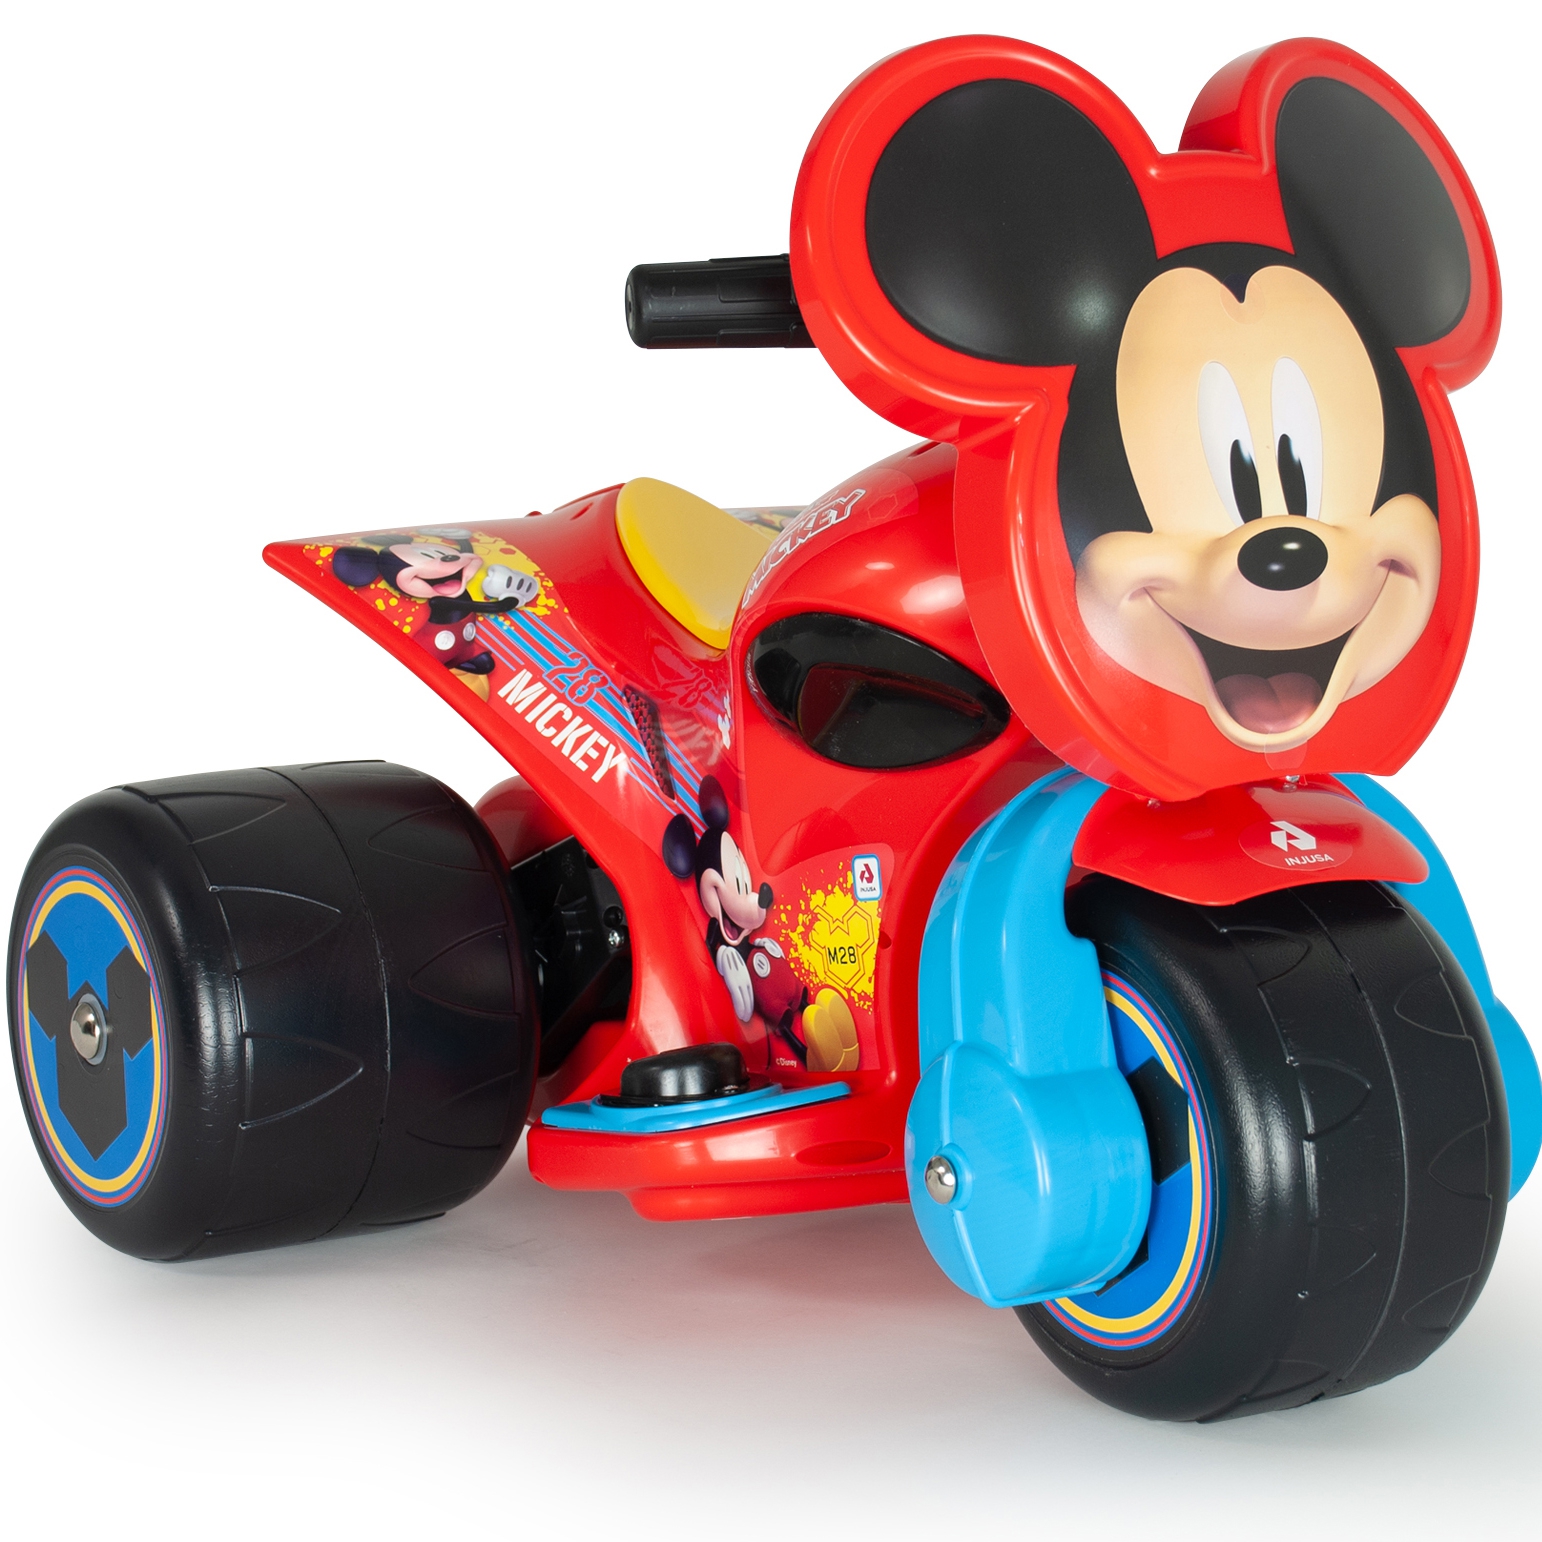 Trzykołowiec myszki miki samurai jeździk dla dzieci na akumulator 6v, zabawka dla dzieci, INJUSA